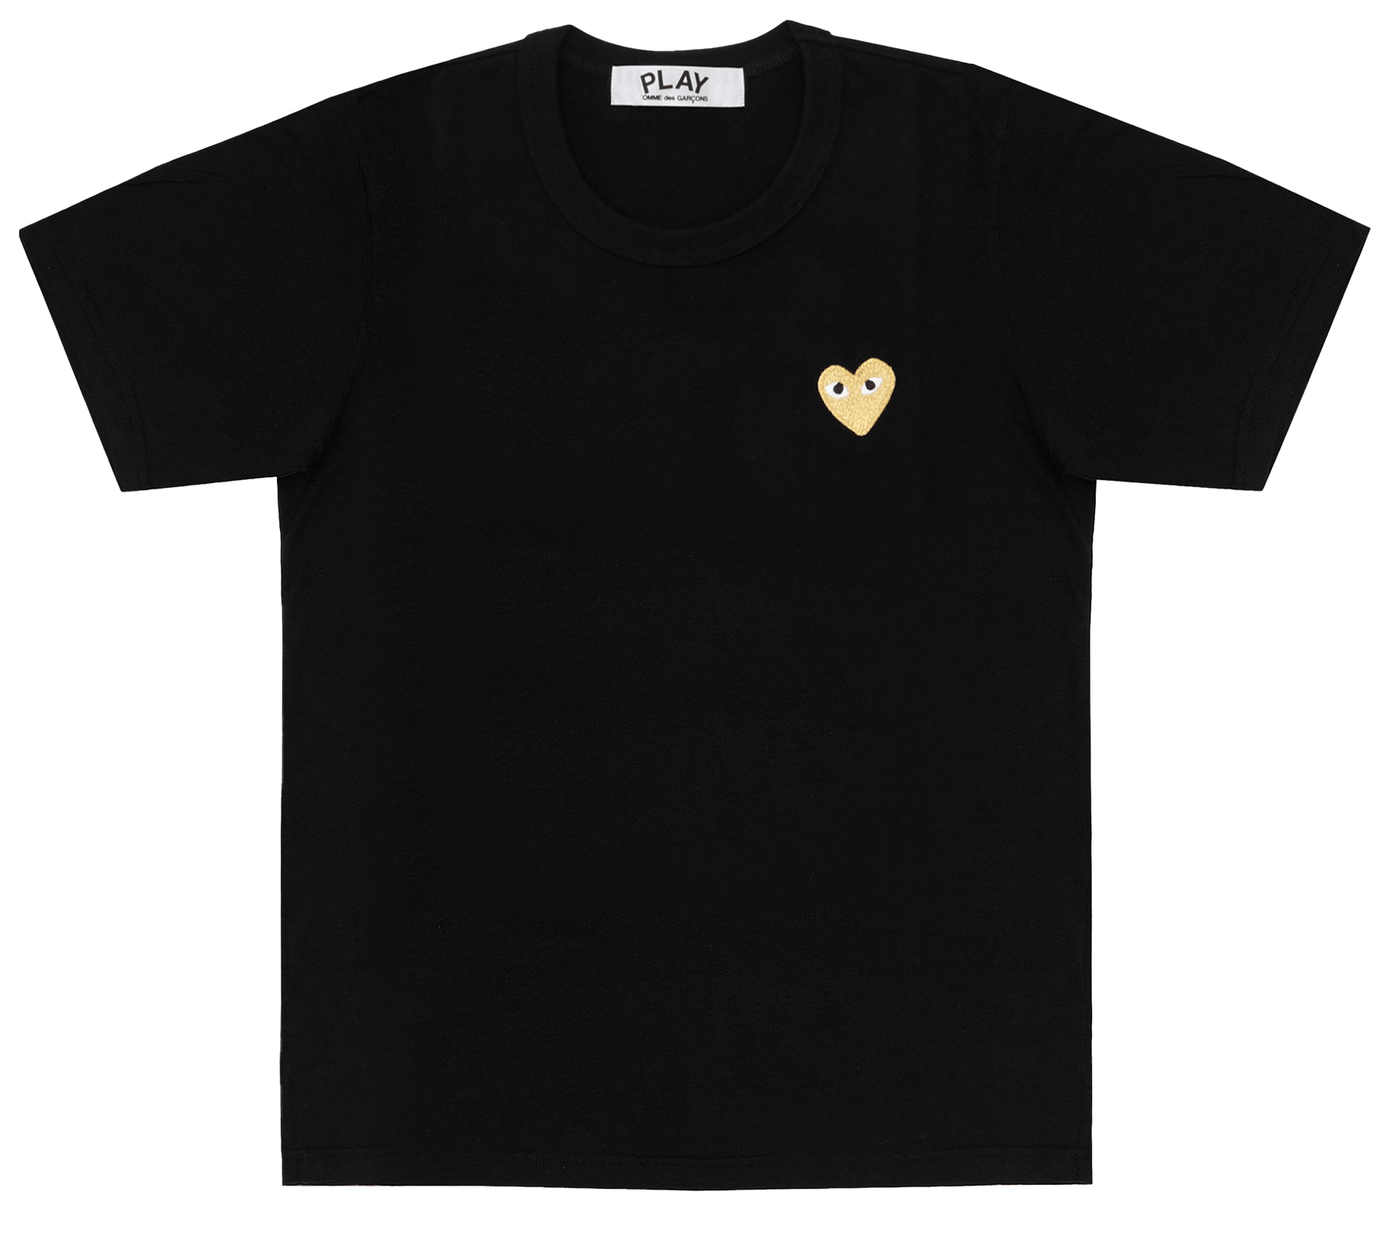     Comme-des-Garcons-Play-T-Shirt-With-Gold-Emblem-Men-Black-1